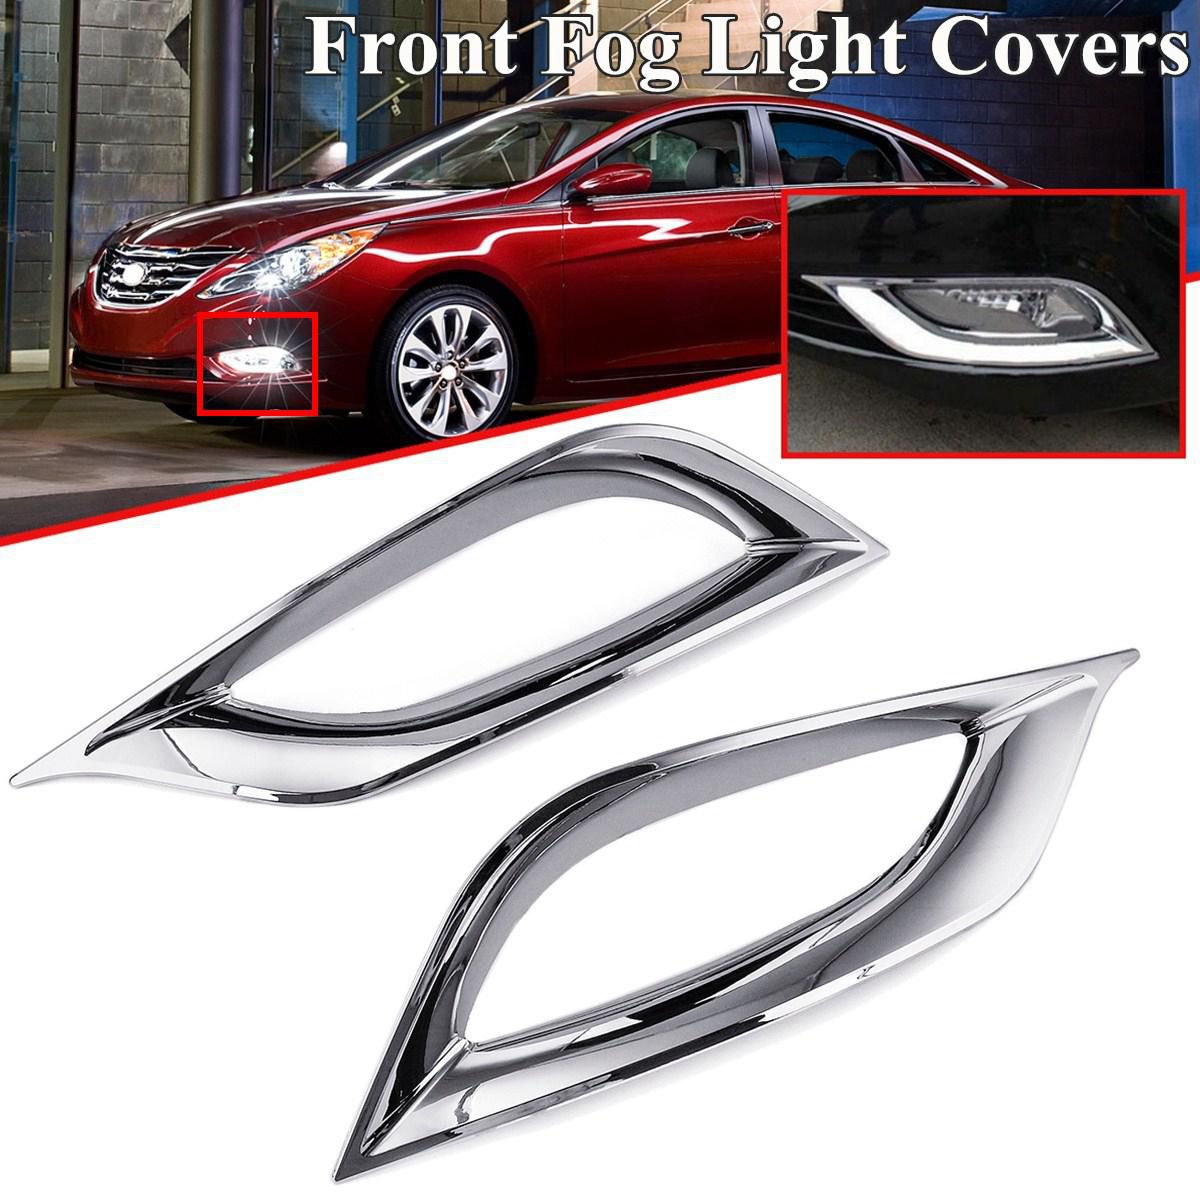 Chrome Front Fog Light Cover Trim Molding For Hyundai Sonata i45 YF 2011-2012